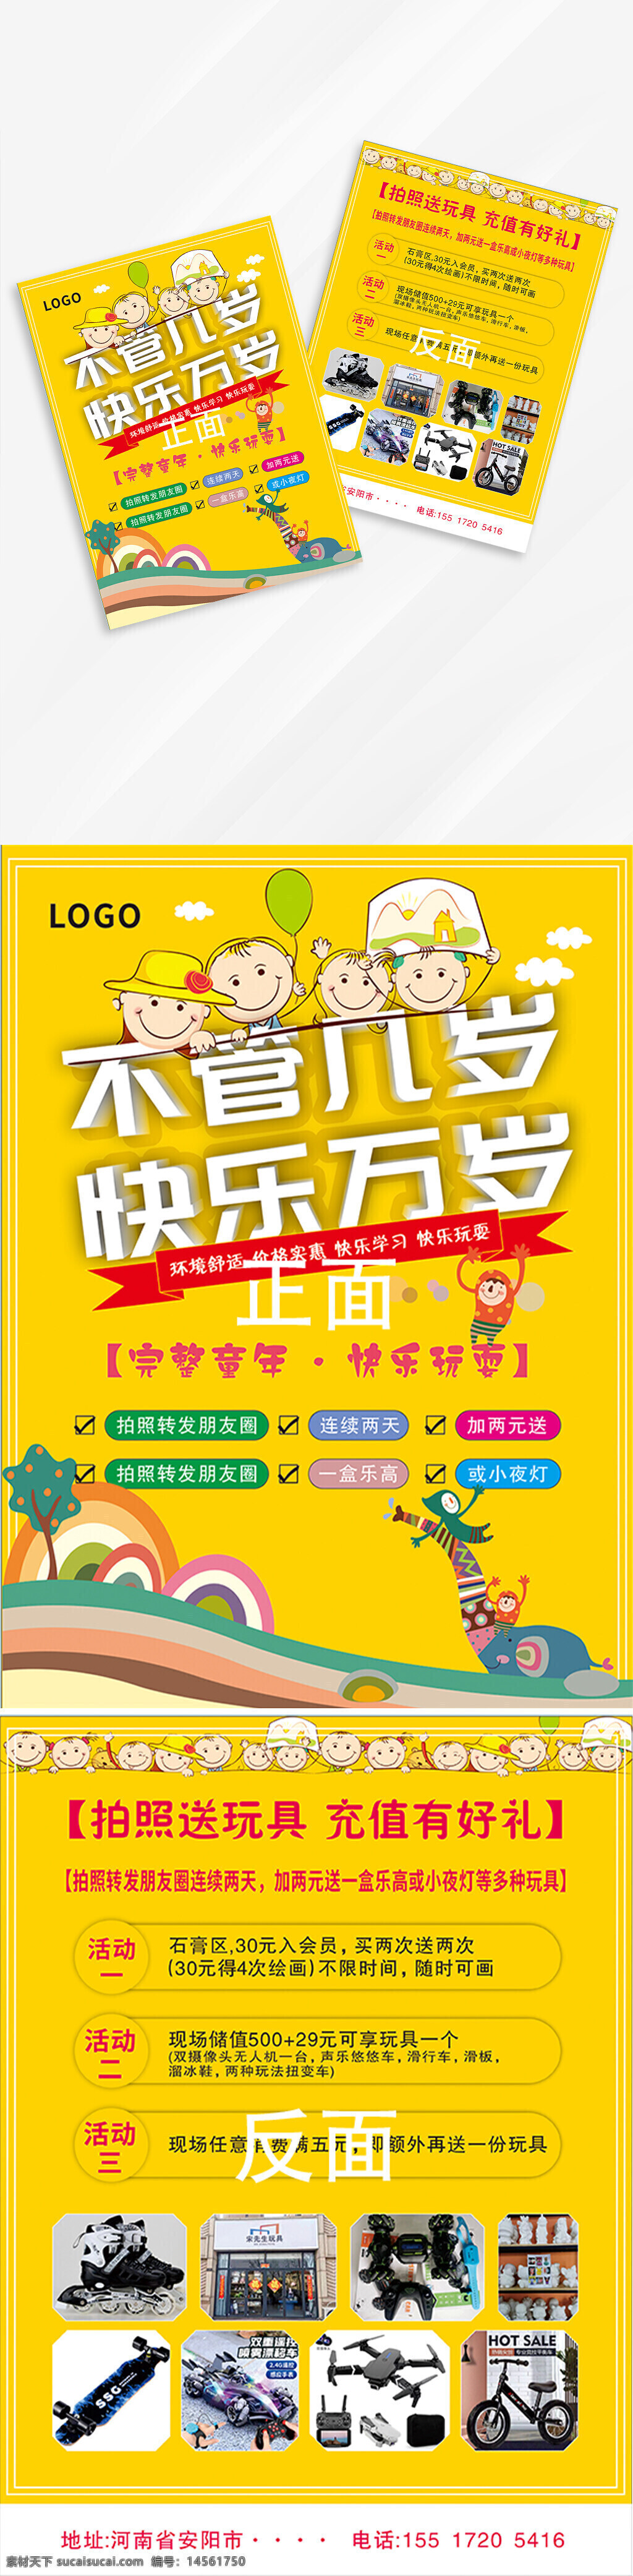 宣传页 海报 玩具店 童年 童真 黄色 亮色 幼儿园 活泼 卡通